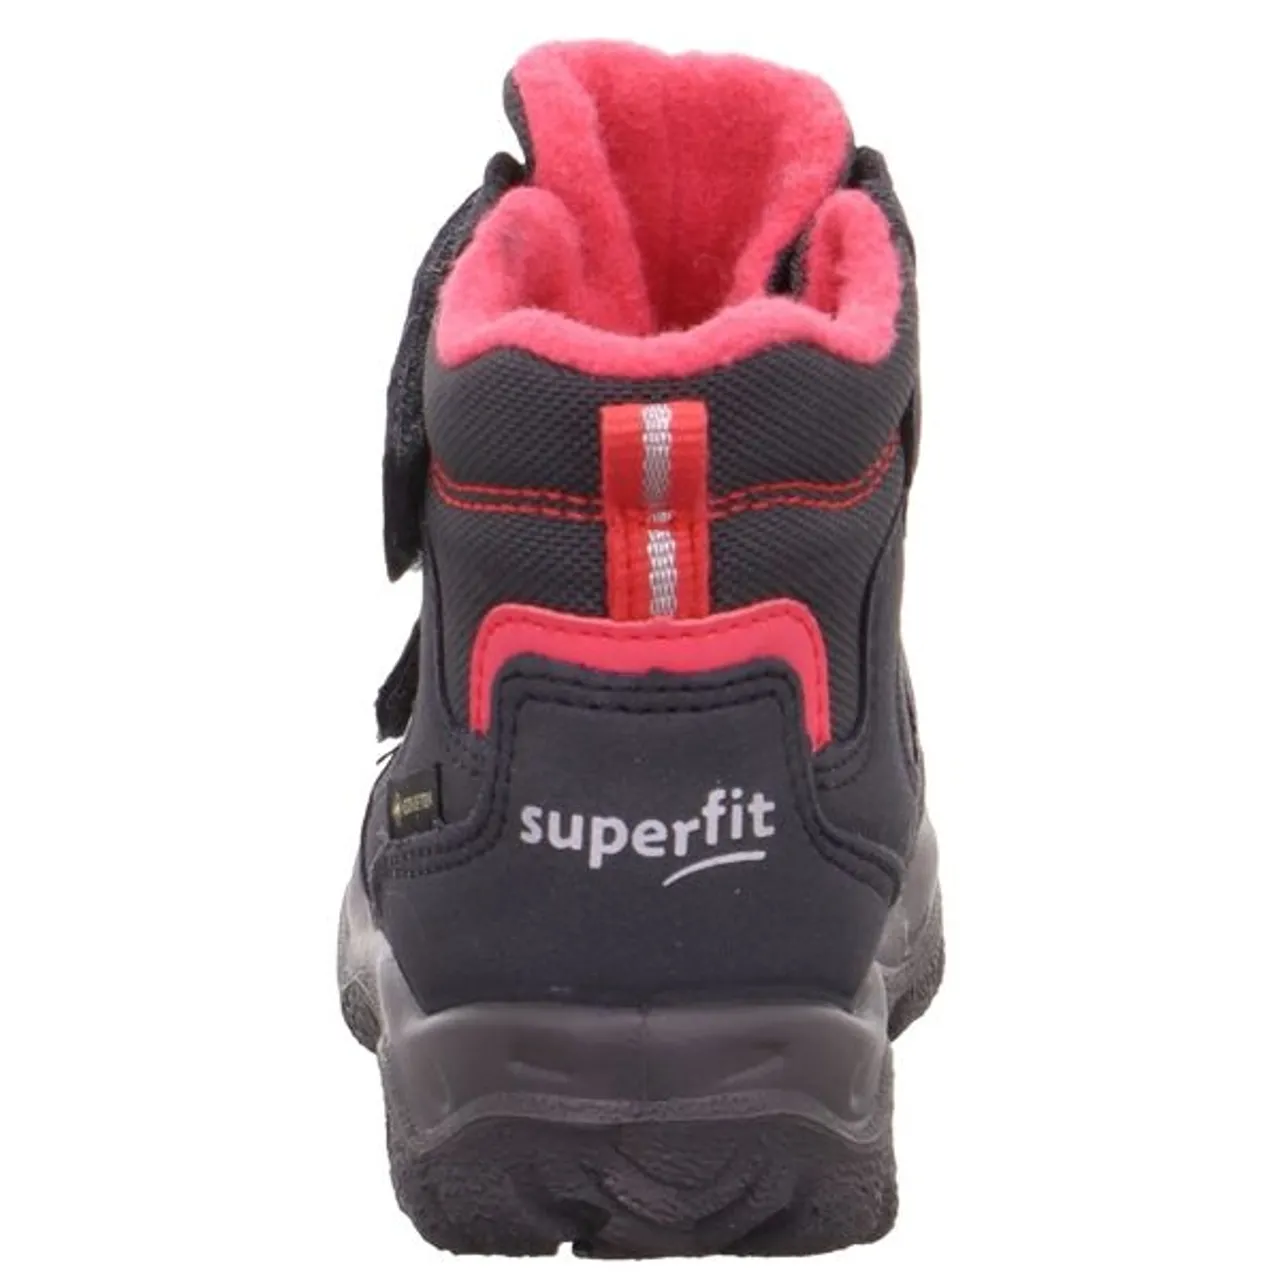 Winterstiefel SUPERFIT "HUSKY1 WMS: Mittel" Gr. 21, bunt (anthrazit, pink) Kinder Schuhe Stiefel Boots